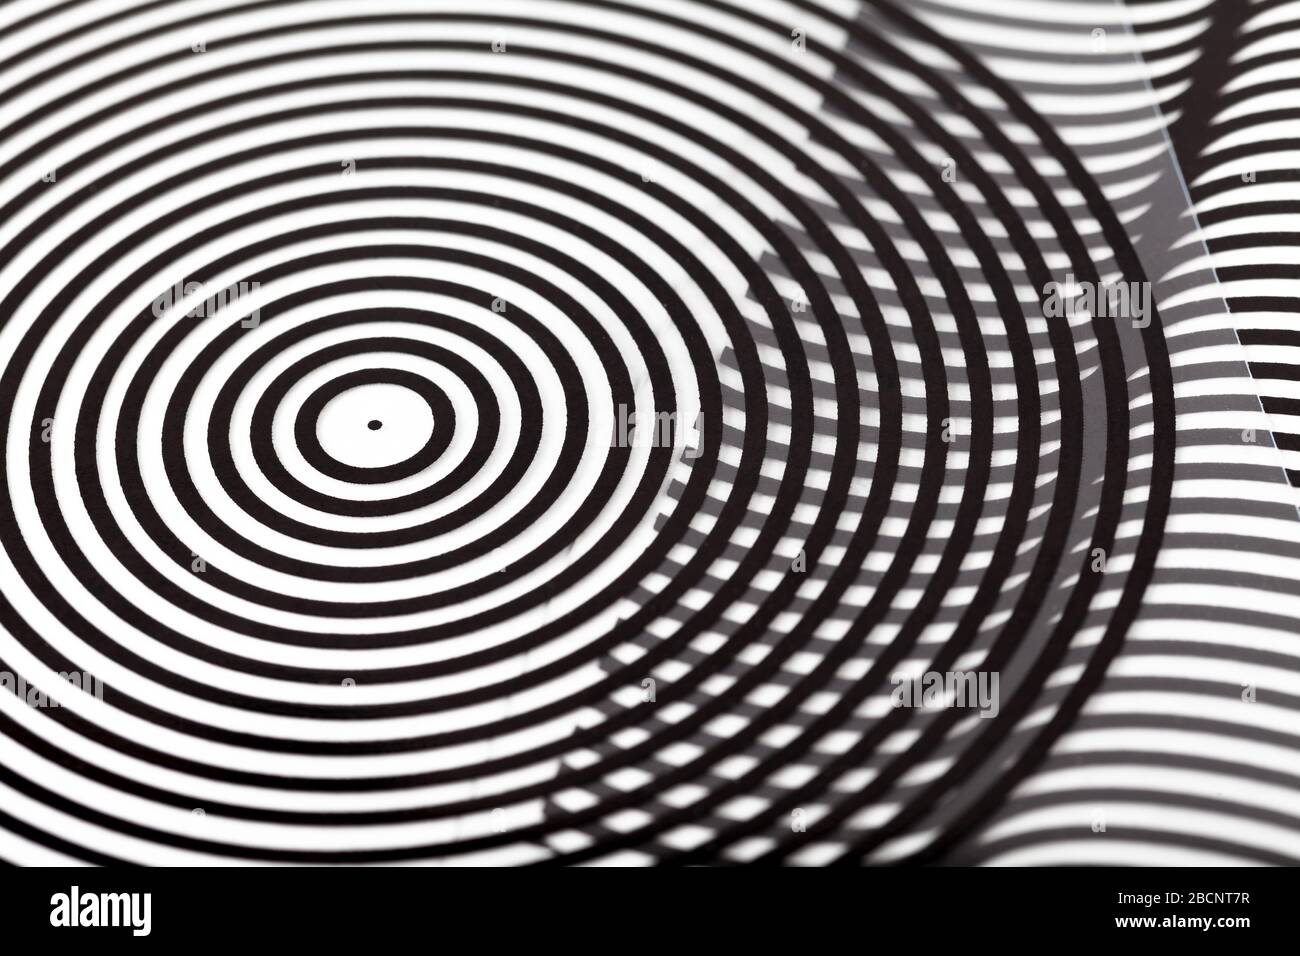 Optische Täuschungen, Schimanimation, Barriere-Grid-Animation einfache Folienfolien abstrakte kunstlose transparente Objektträger, geometrische Formen kreisförmiges Muster, Schwarzweiß Stockfoto